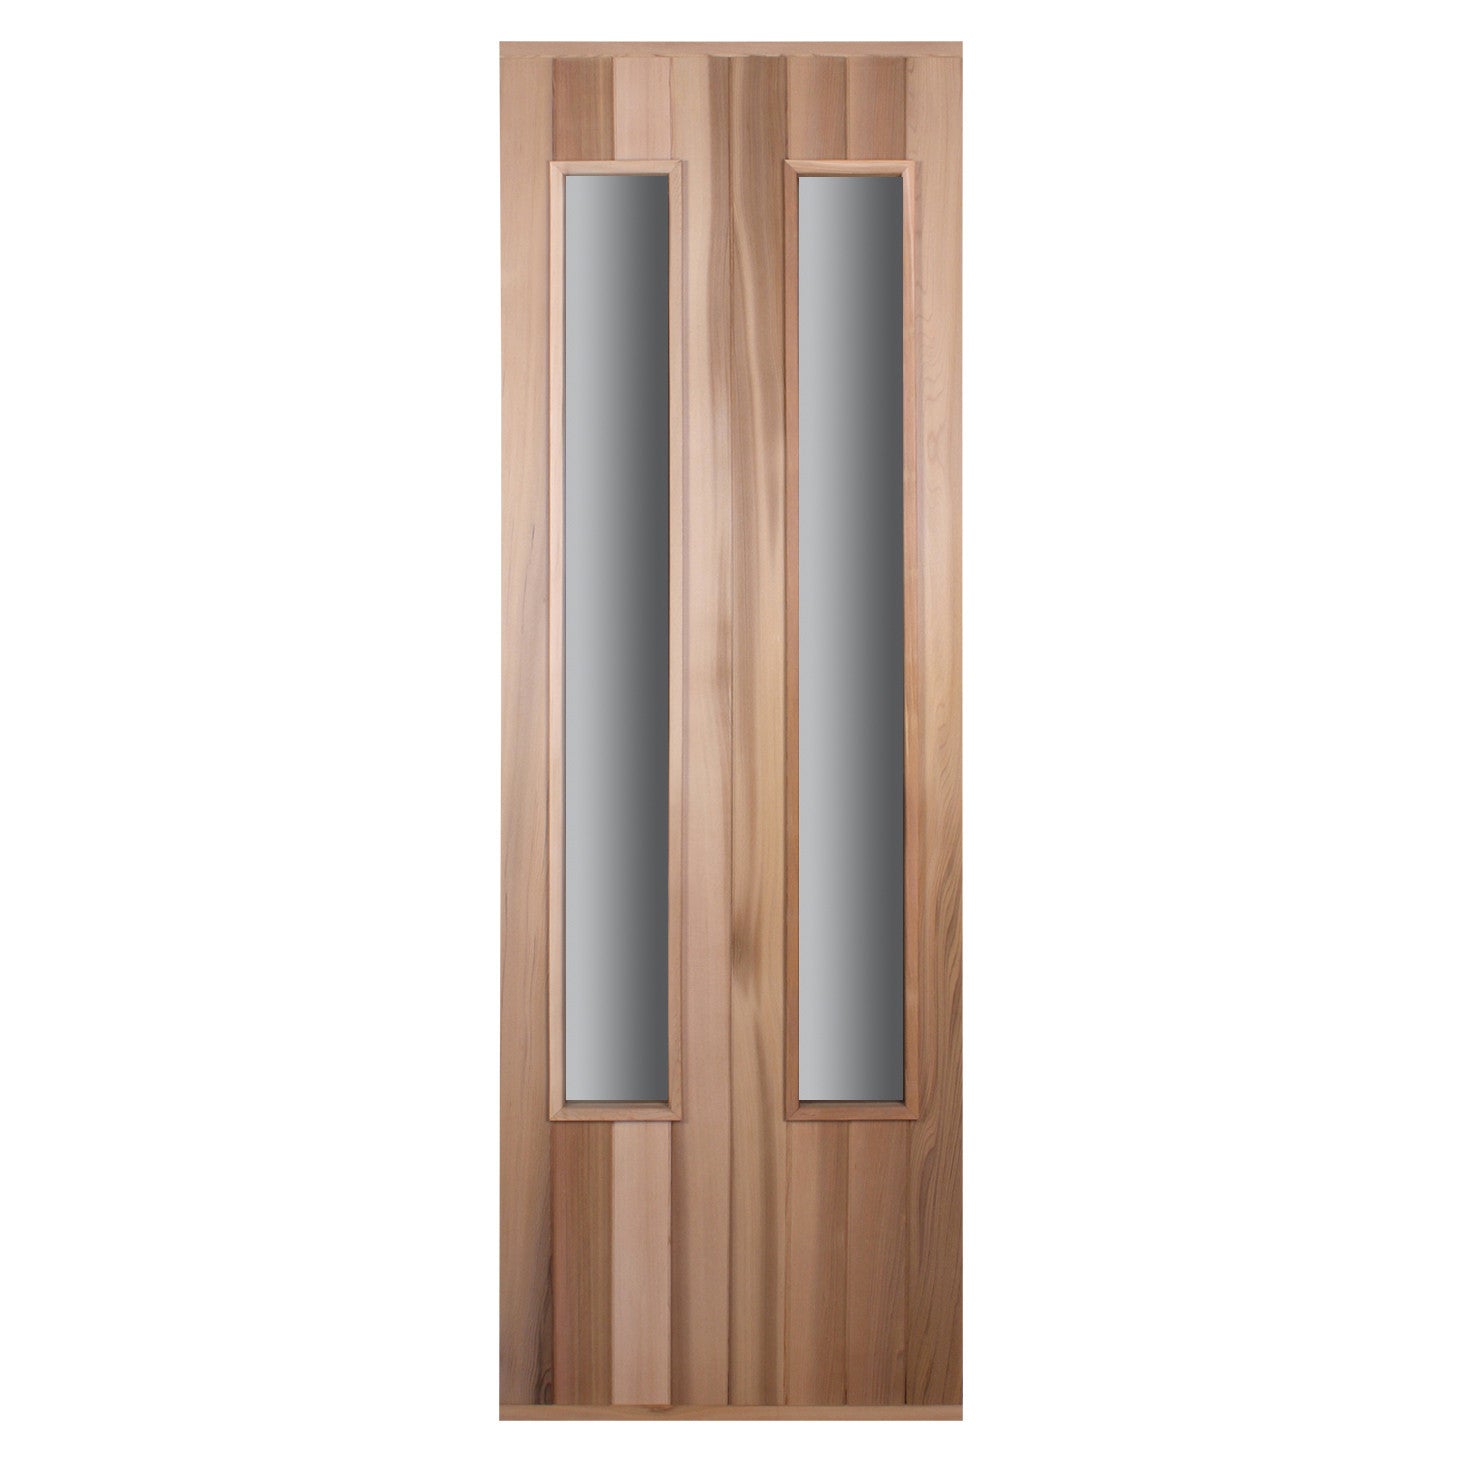 Cedar Door with Two Long Slim Windows